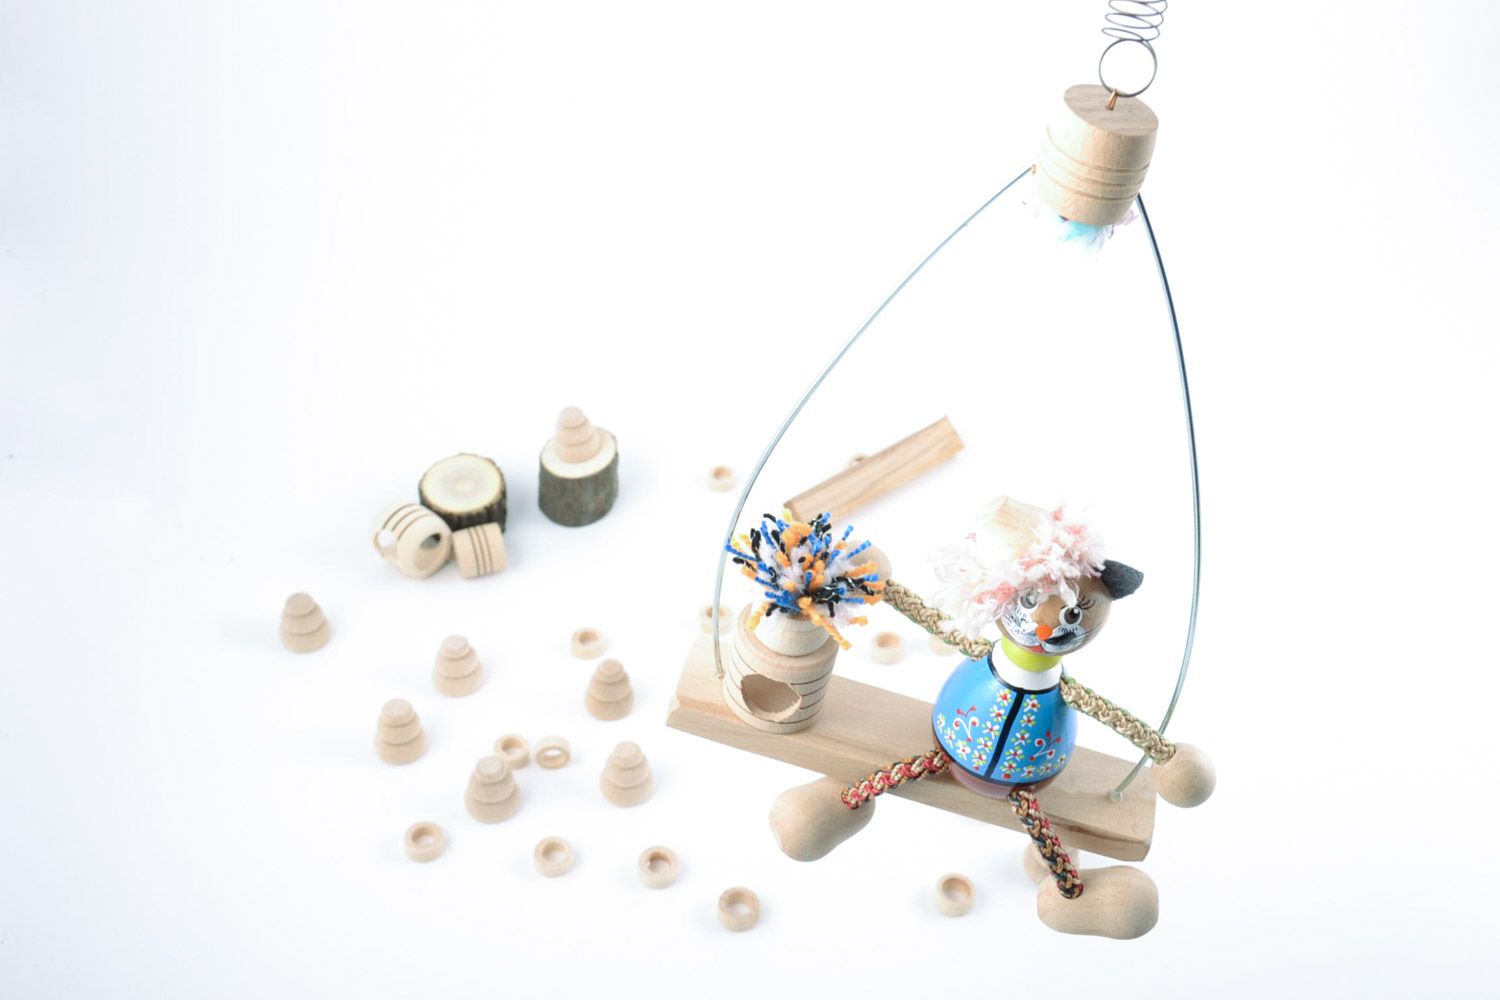 Игрушка из дерева на пружинке расписная ручной работы оригинальная для ребенка фото 2